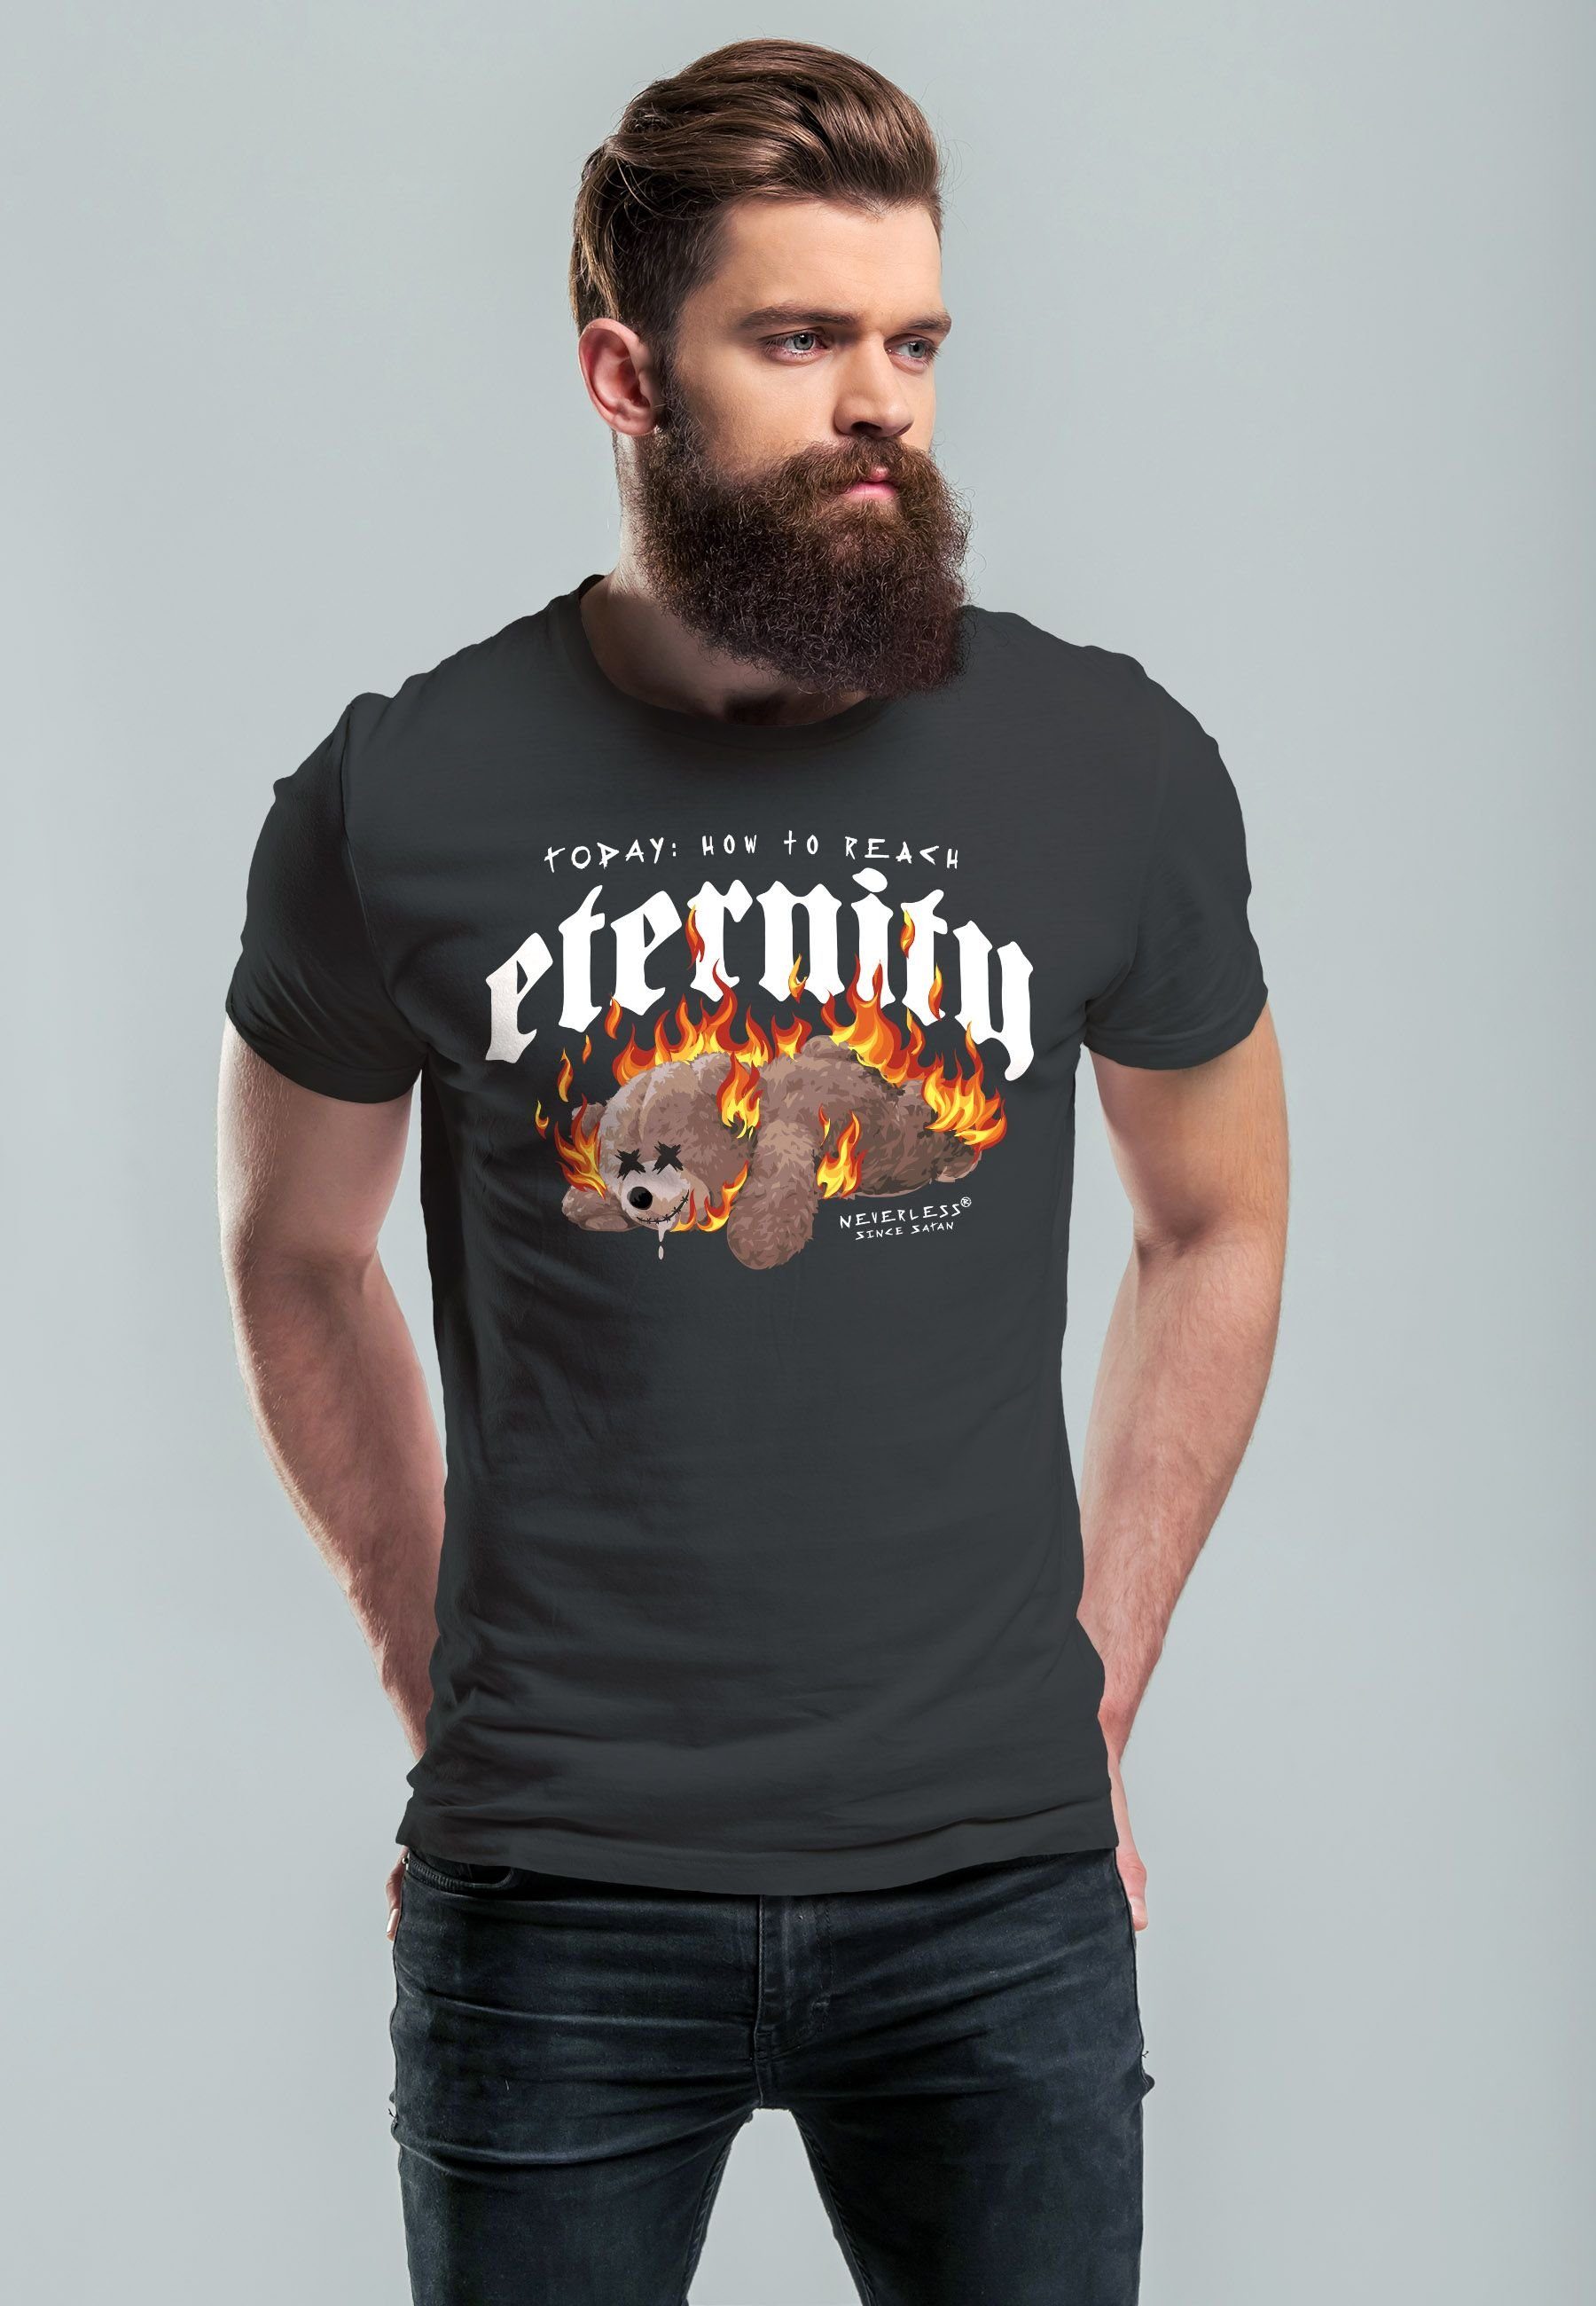 Neverless T-Shirt anthrazit Sarkasmus Teddy Herren Print Bär Eternity mit Ironie Aufdruck Print-Shirt Print Fash